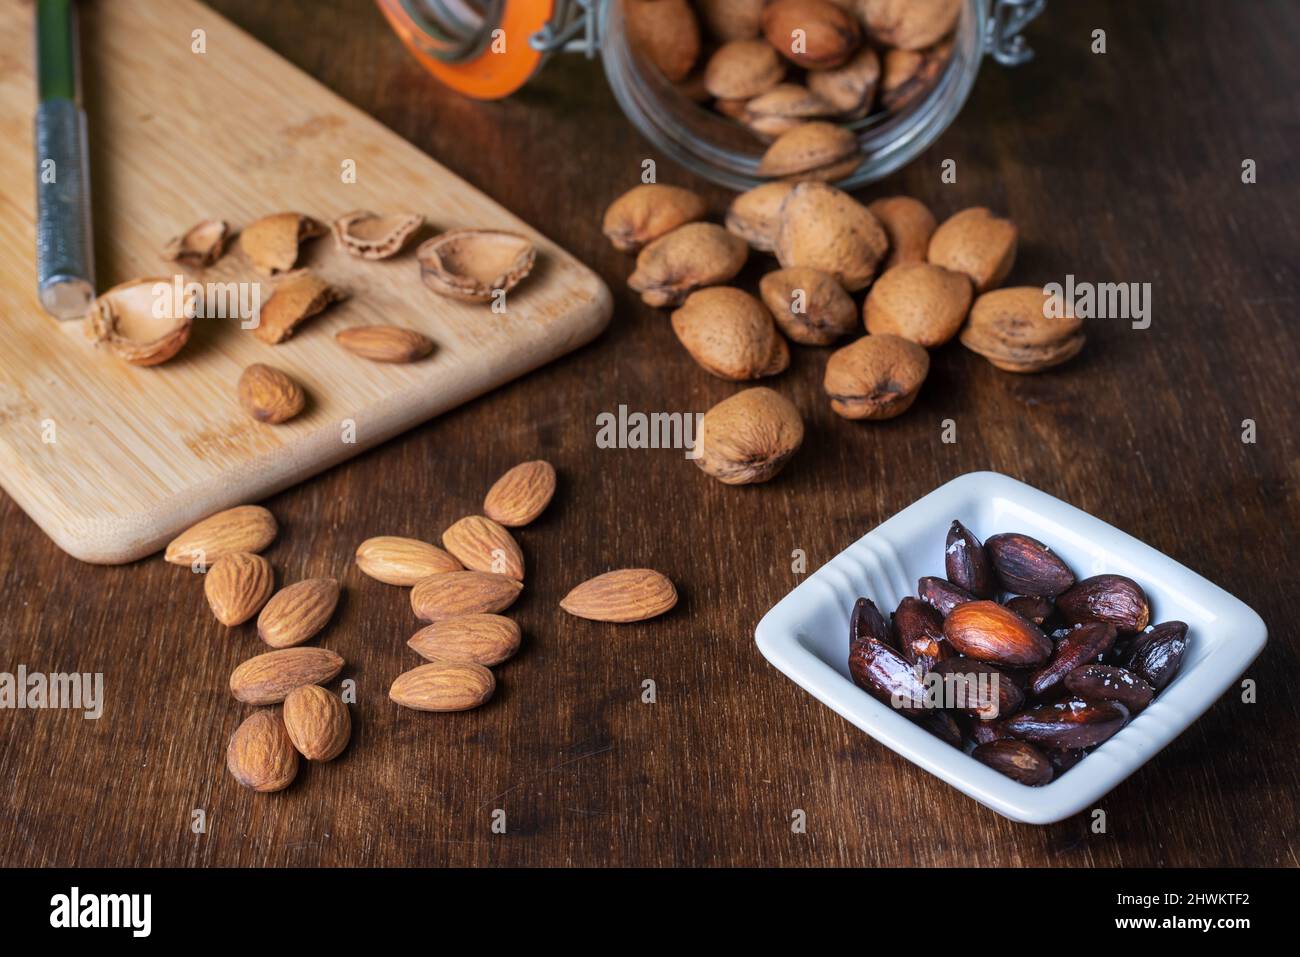 Mandorle, semi e conchiglie di mandorle accanto ad un vaso con mandorle fritte. Foto Stock